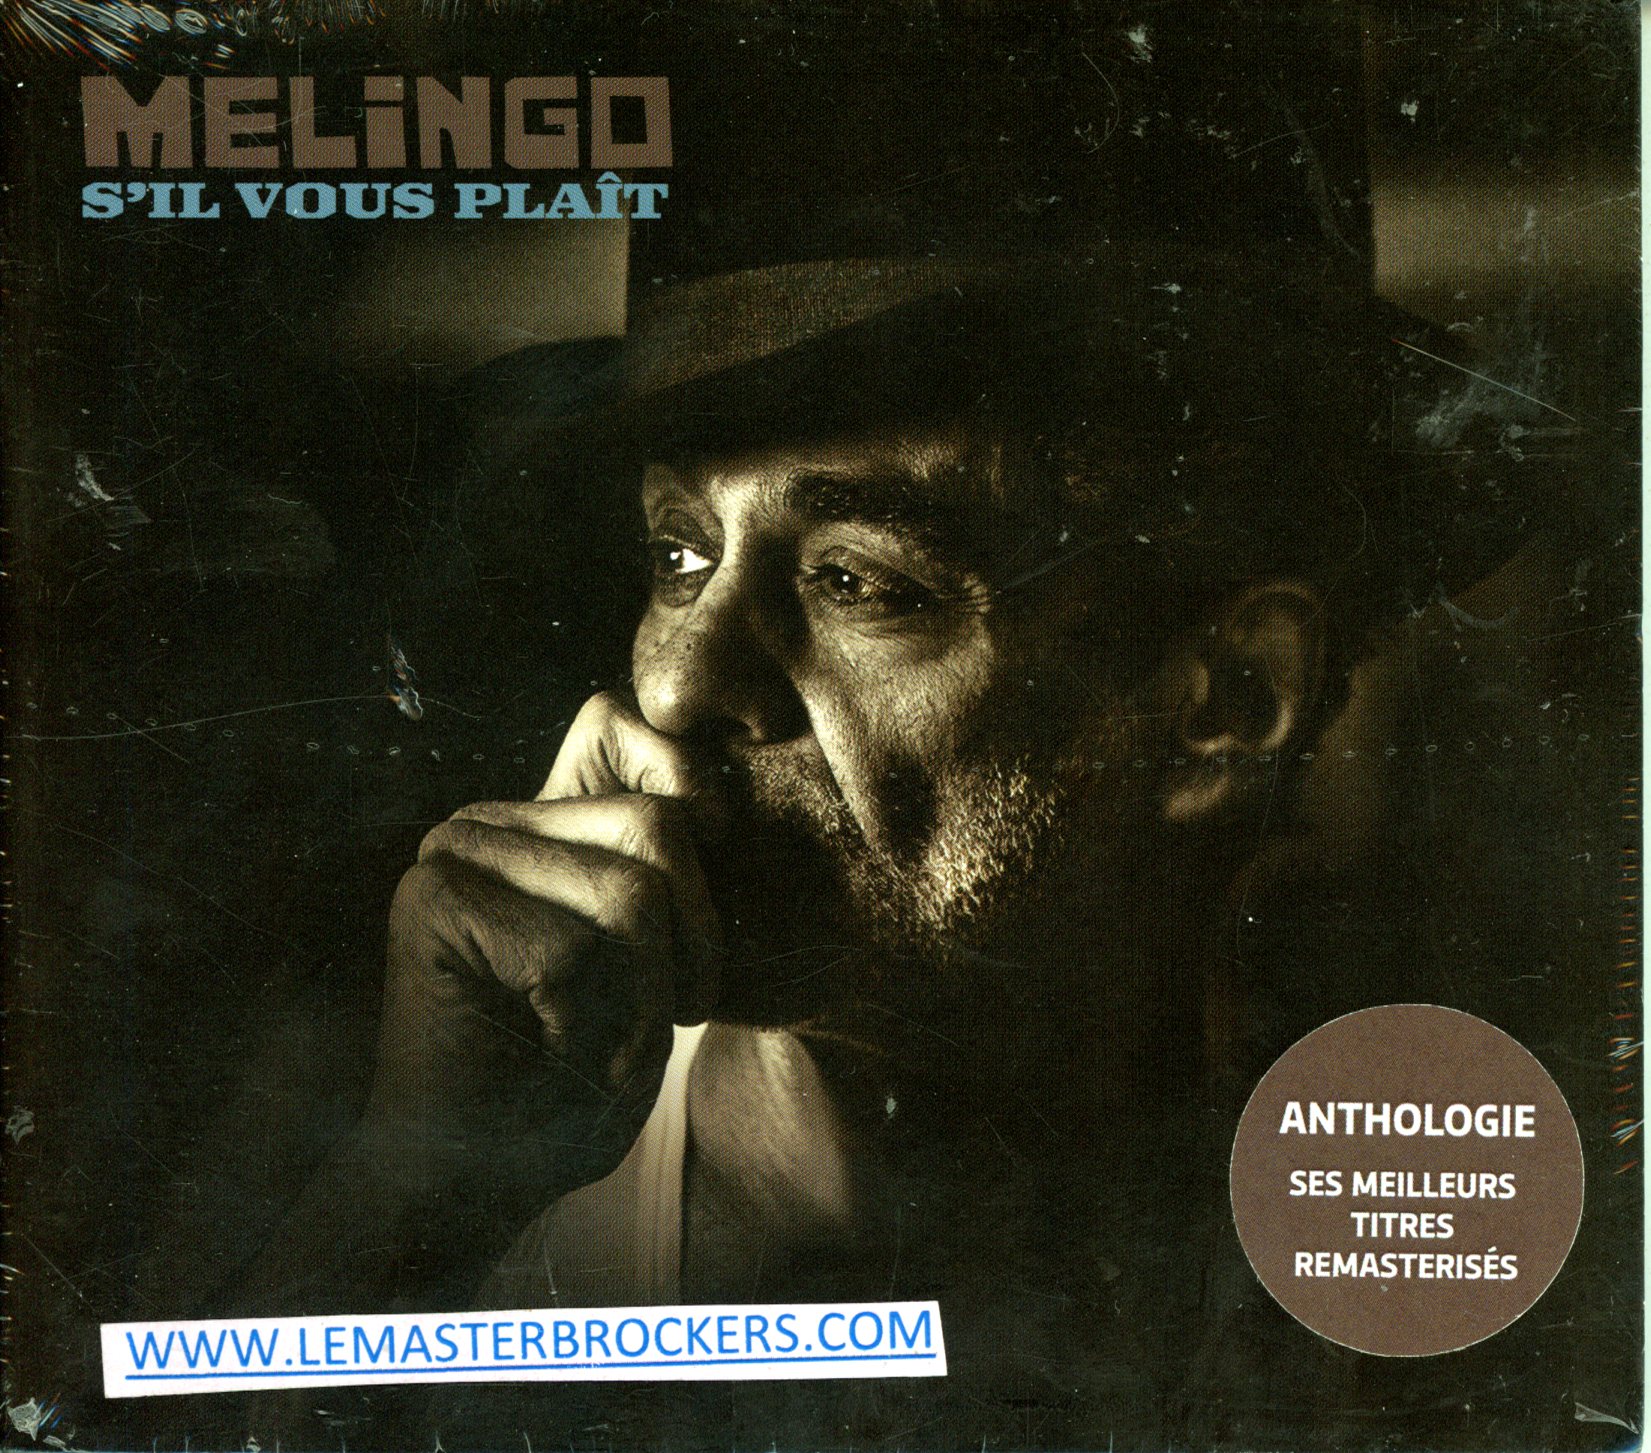 DANIEL MELINGO S'IL VOUS PLAÎT - CD ALBUM